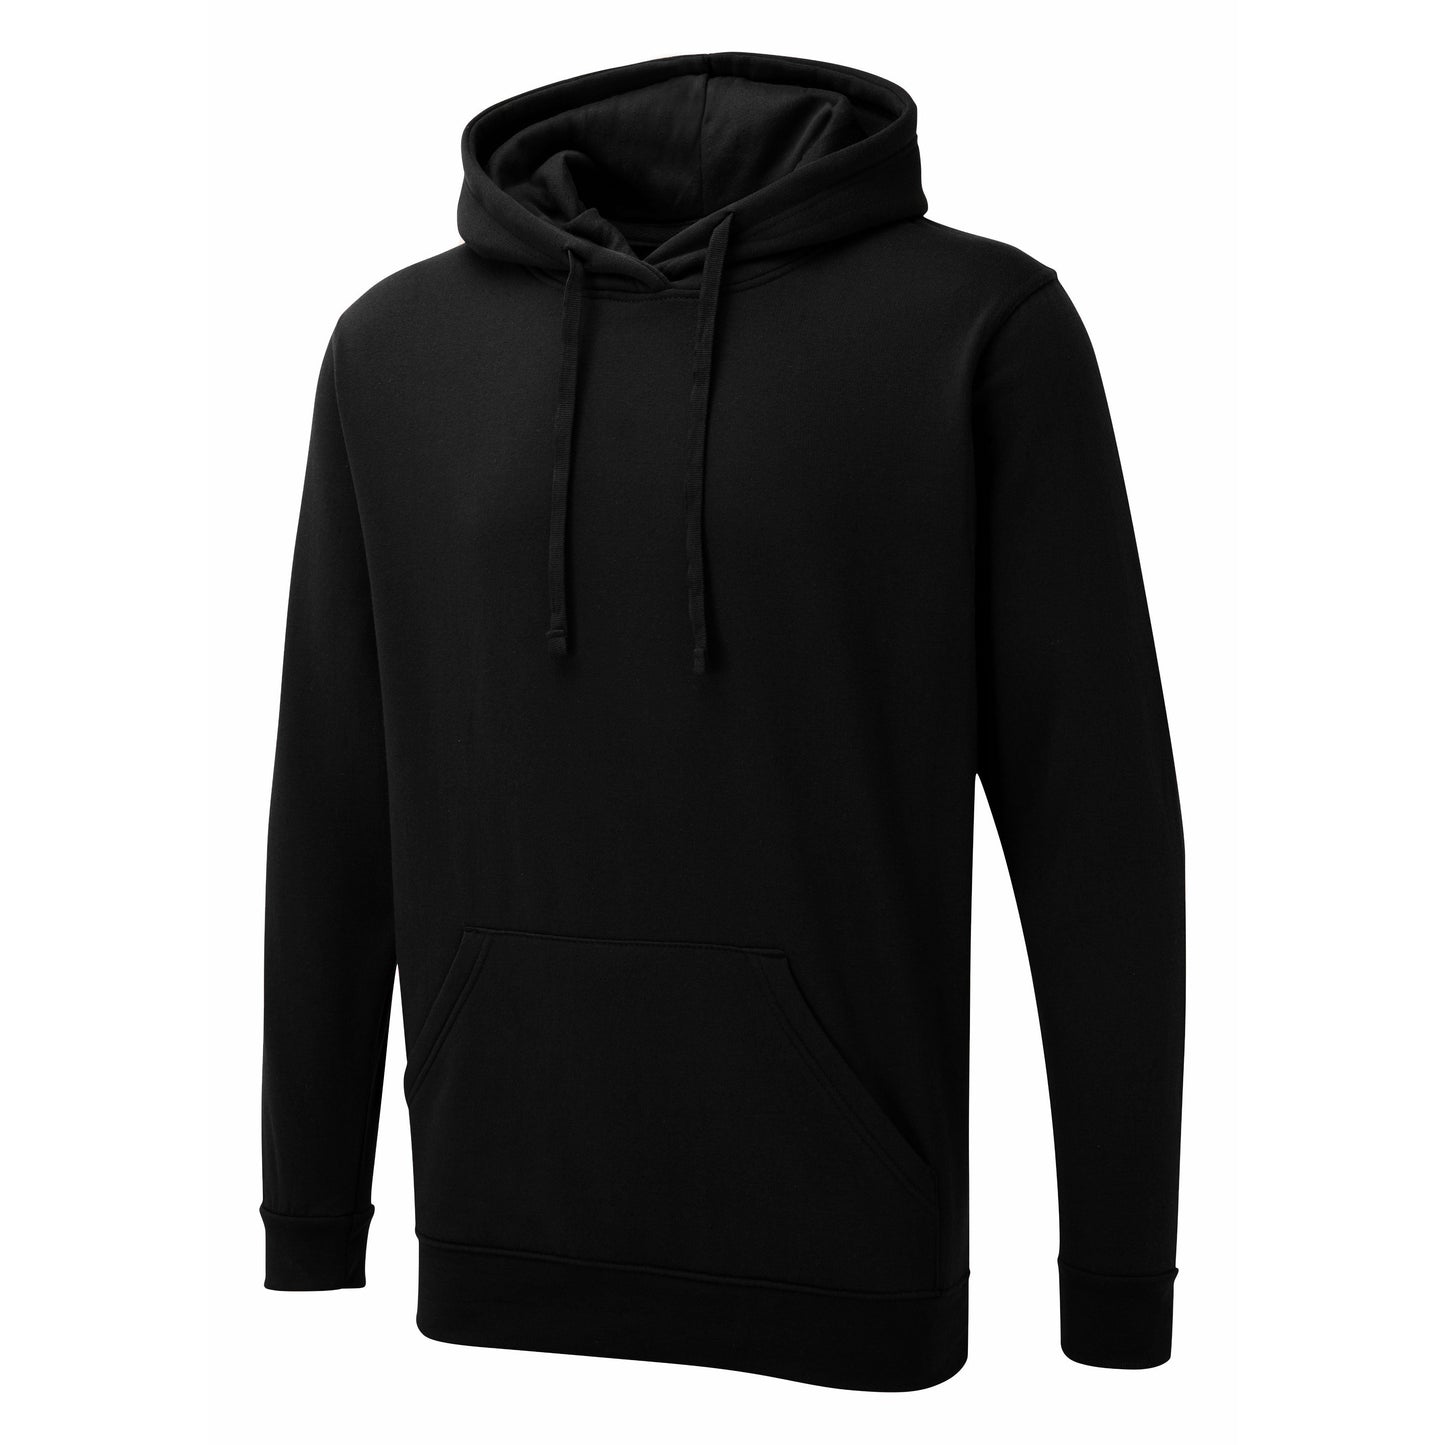 Black UX hoodie